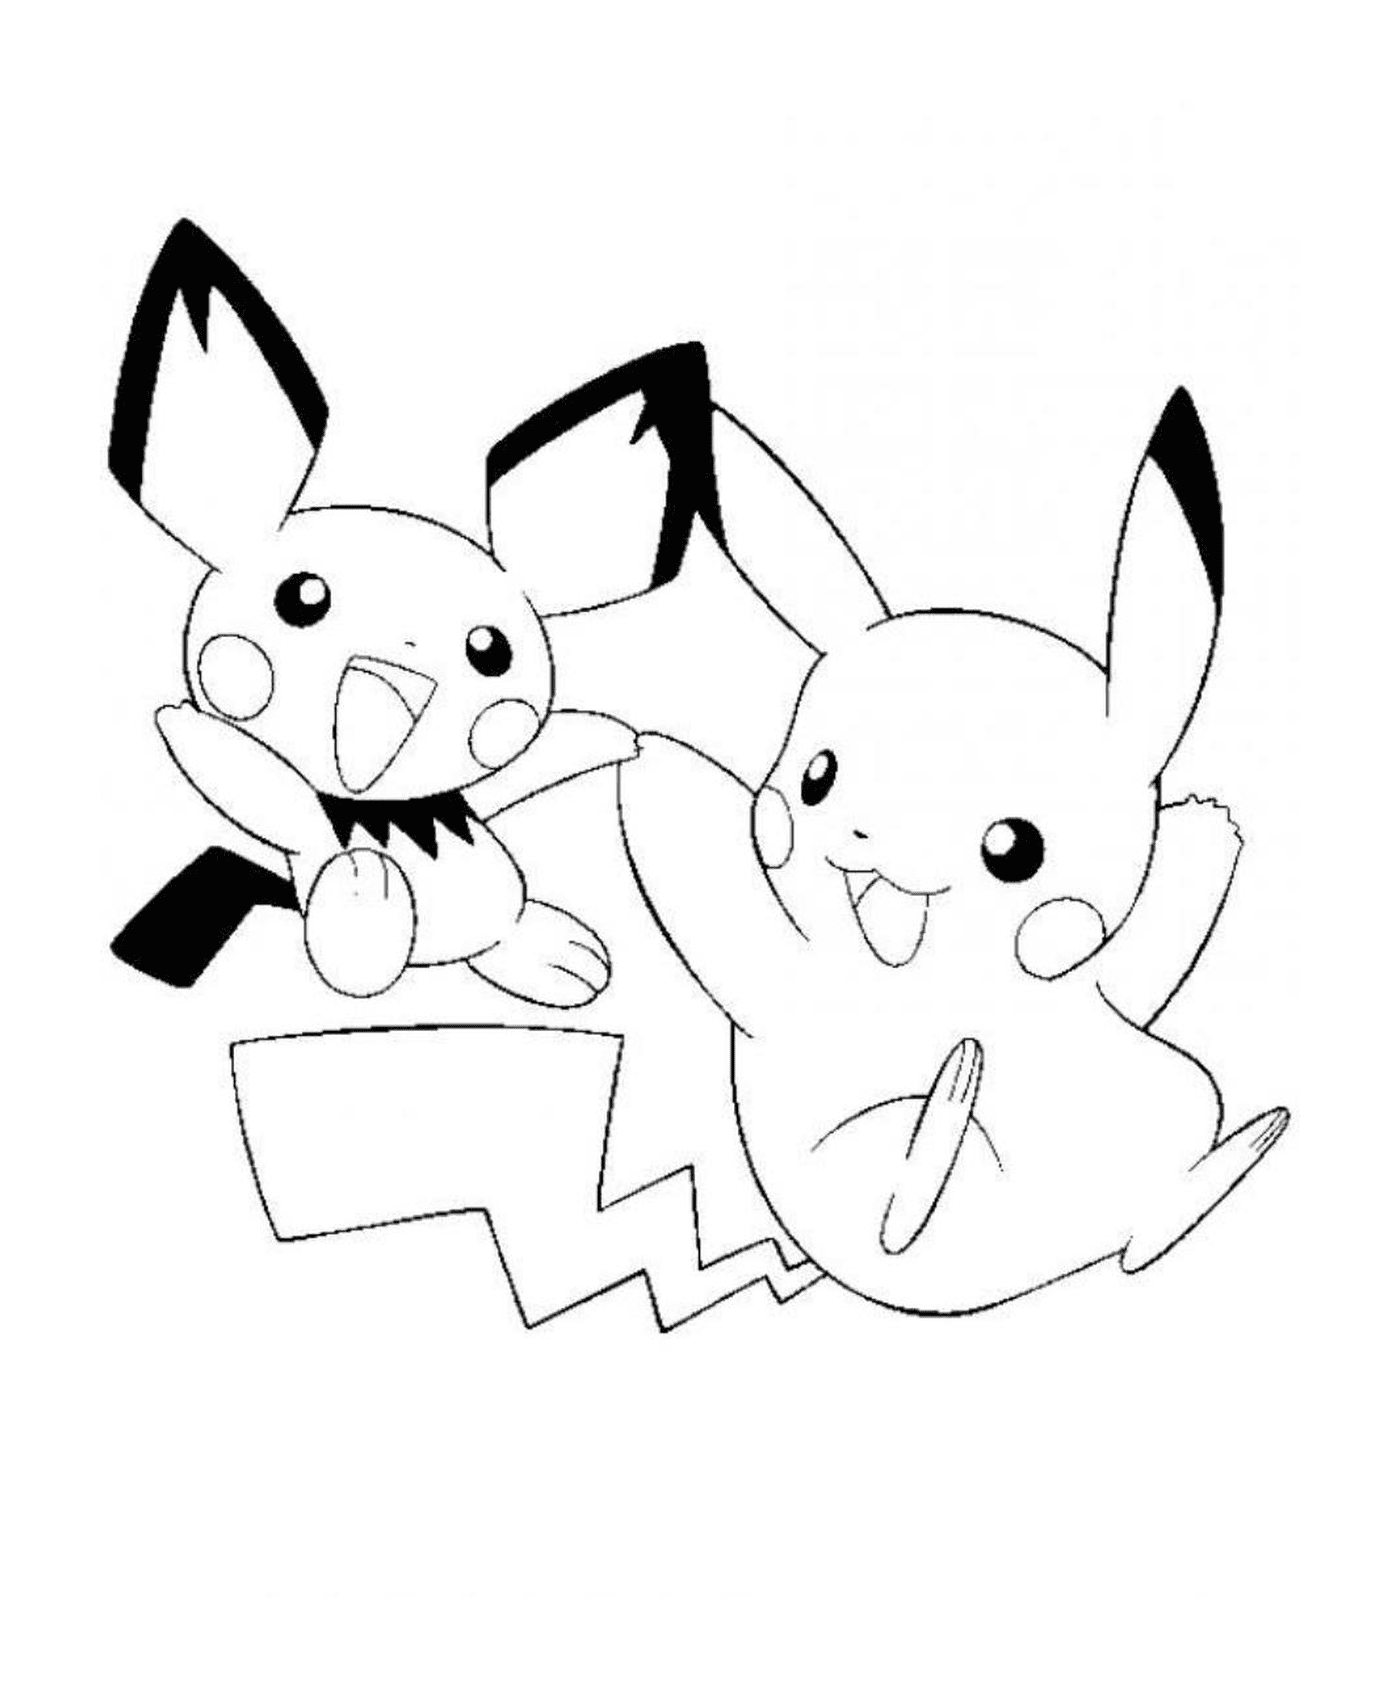  Zwei Pikachus treffen sich 